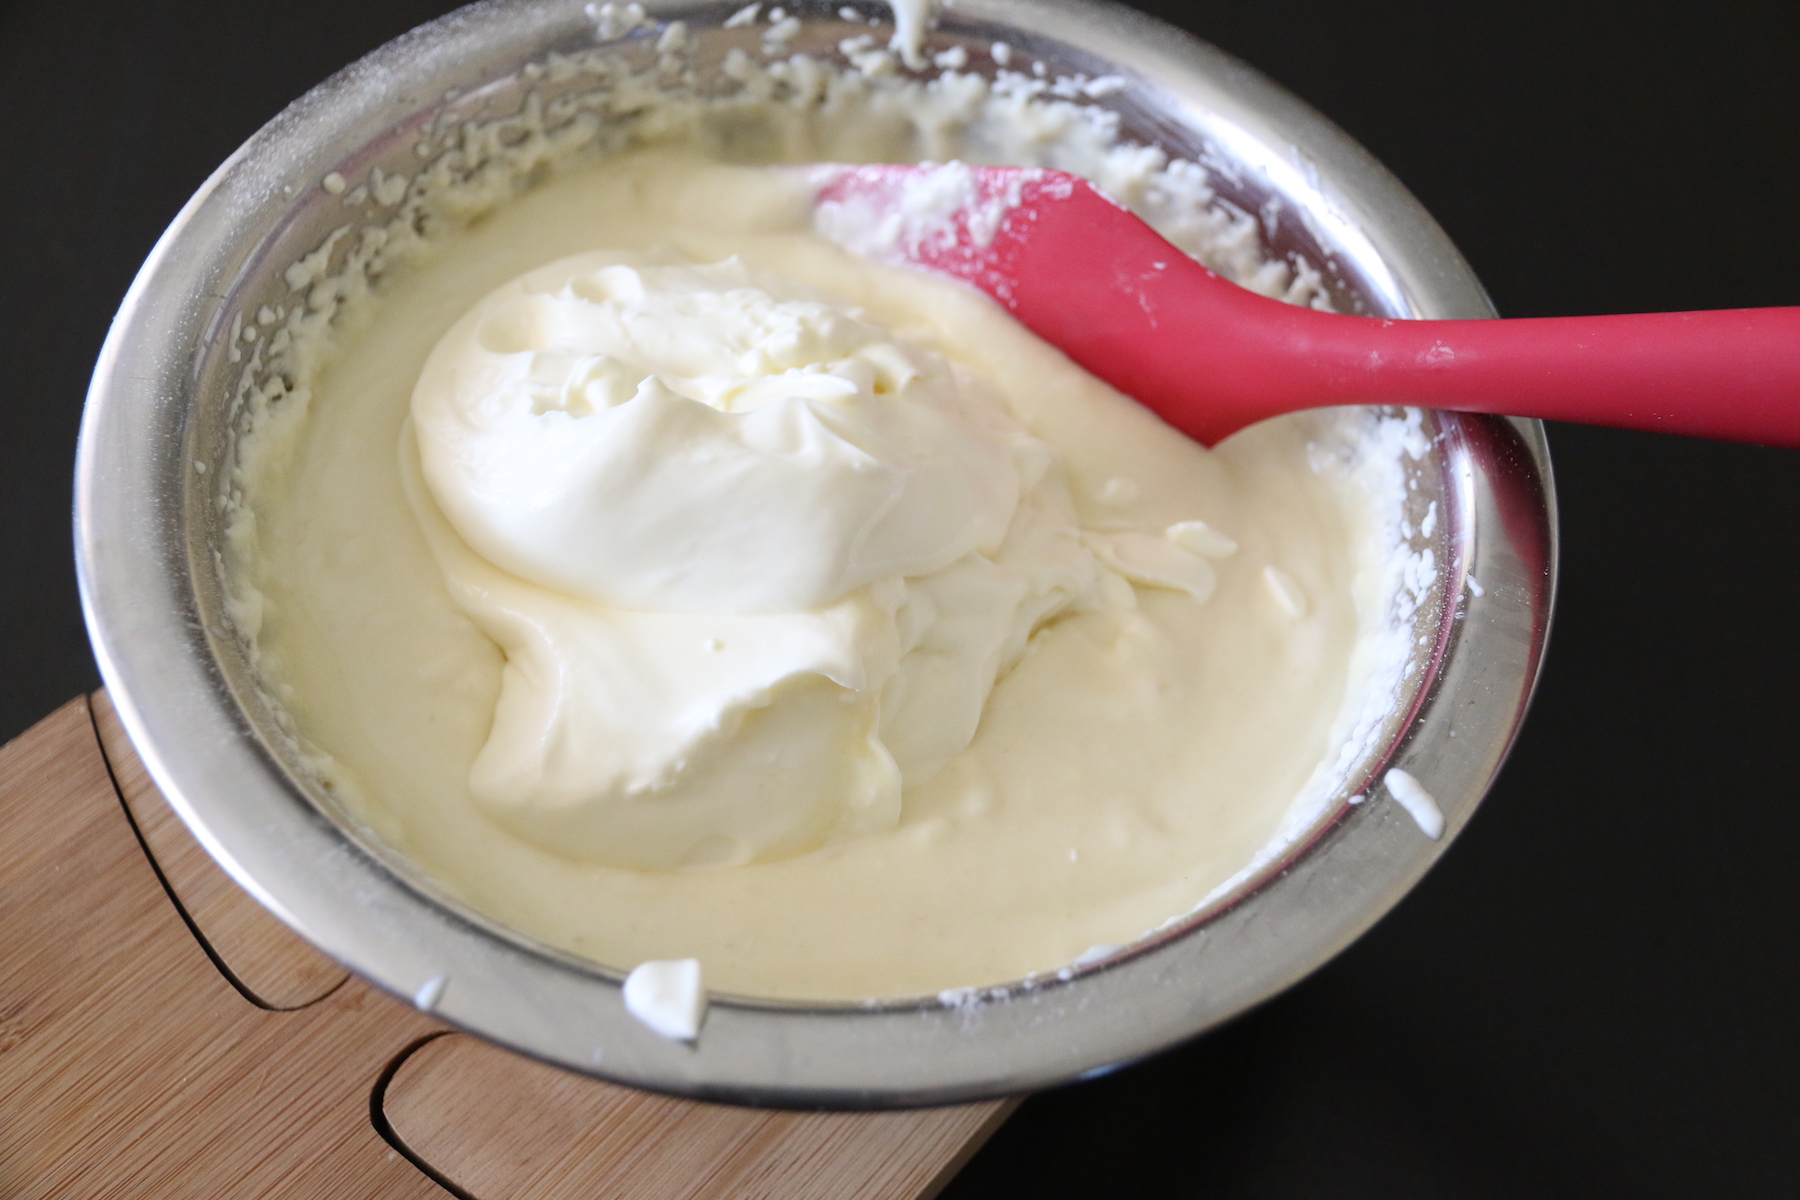 Battre légèrement la crème kéfirisée et la mélanger délicatement à la mousse de kéfir